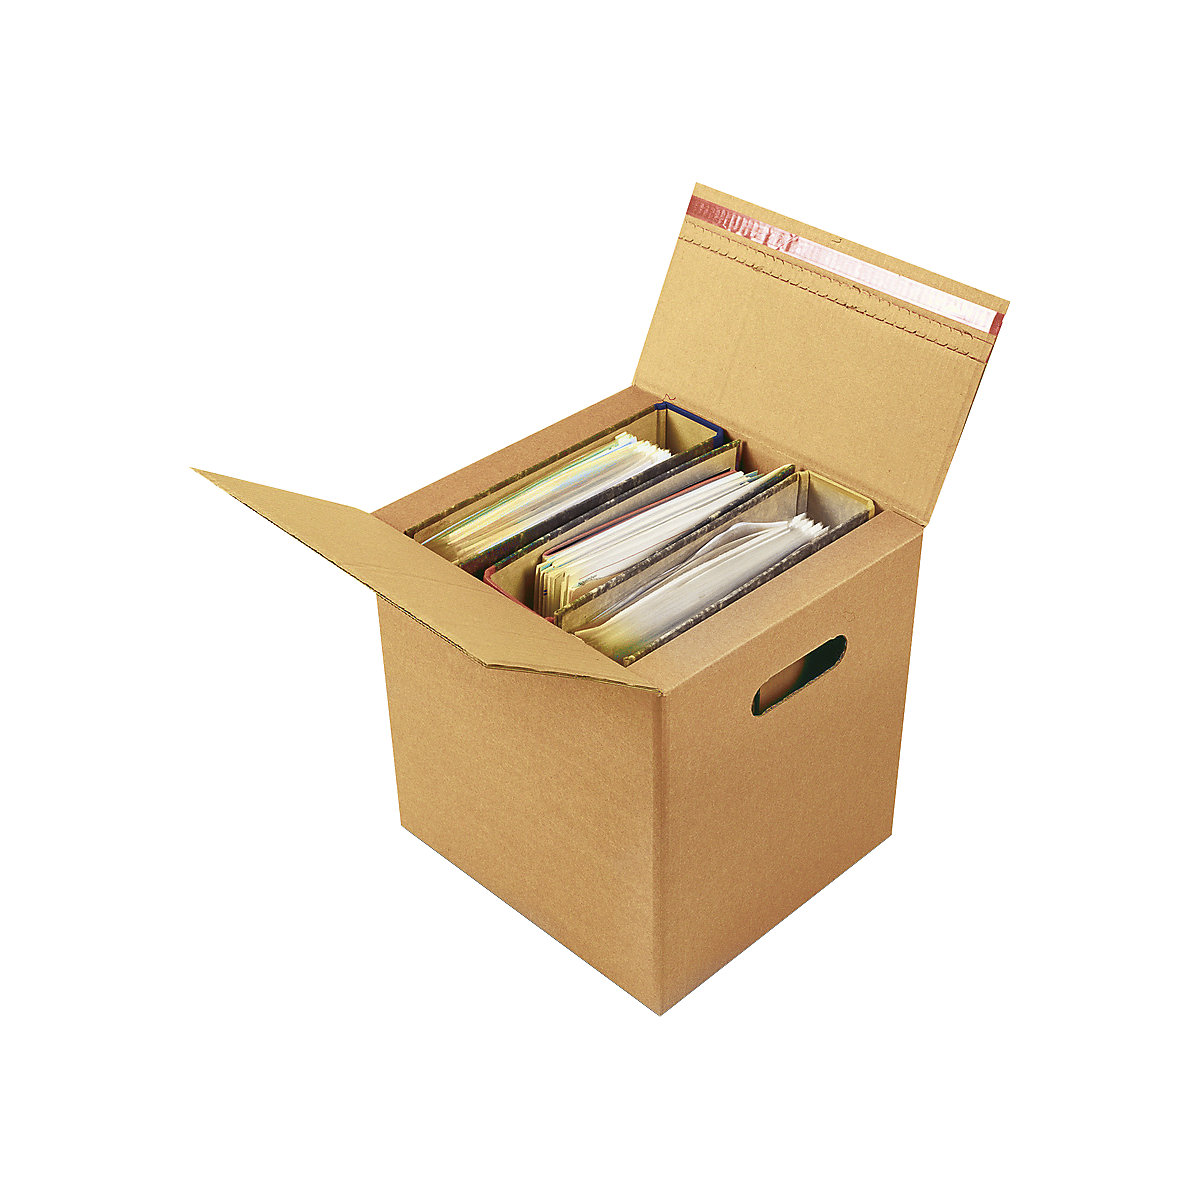 Ordner-Karton, für 2 – 3 Ordner mit Selbstklebeverschluss, Innenmaße 320 x 288 x 315 mm, ab 40 Stk-1